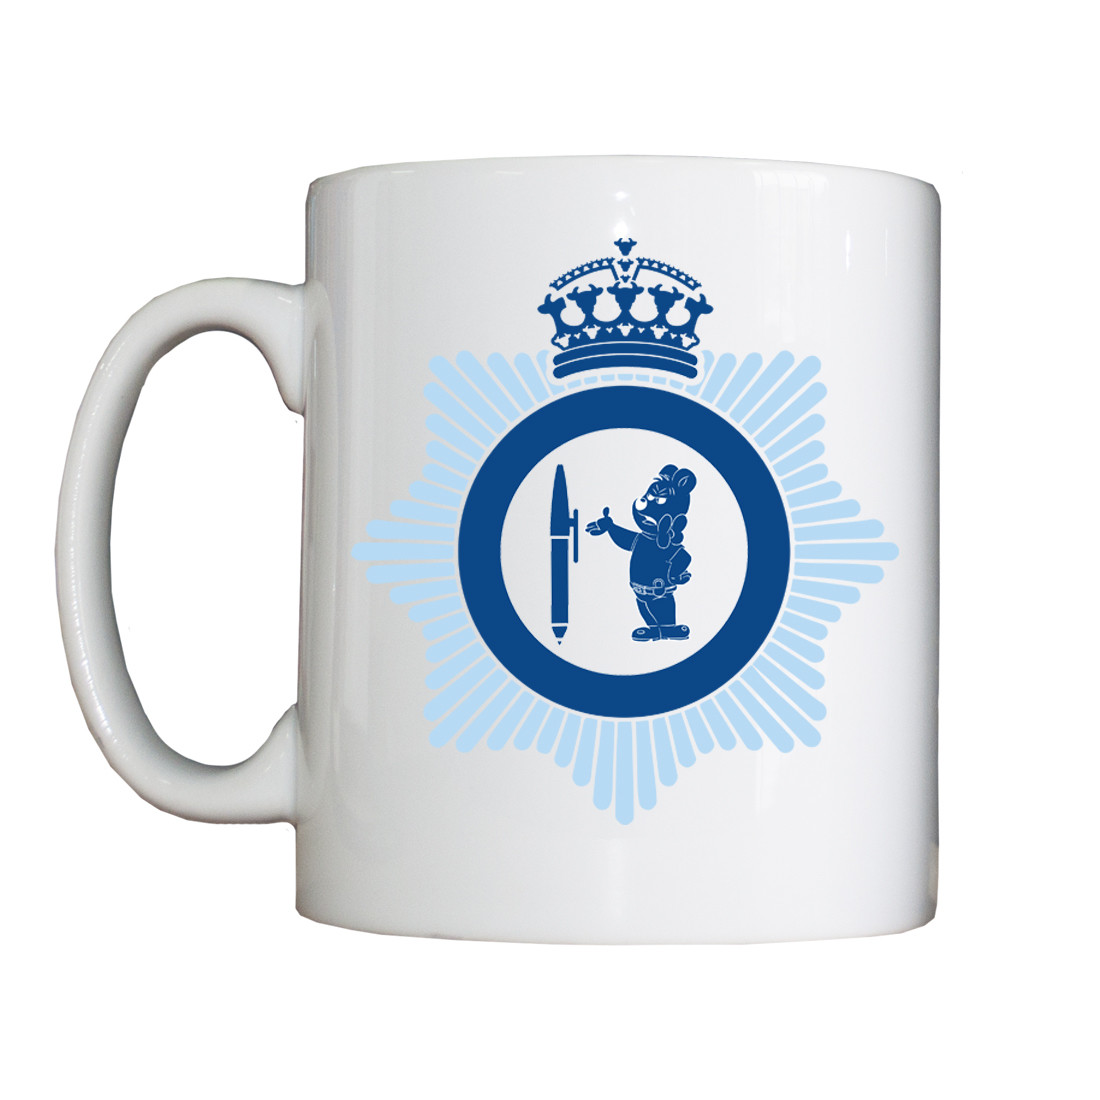 Personalised 'Workshyhere' Drinking Vessel (Mug)